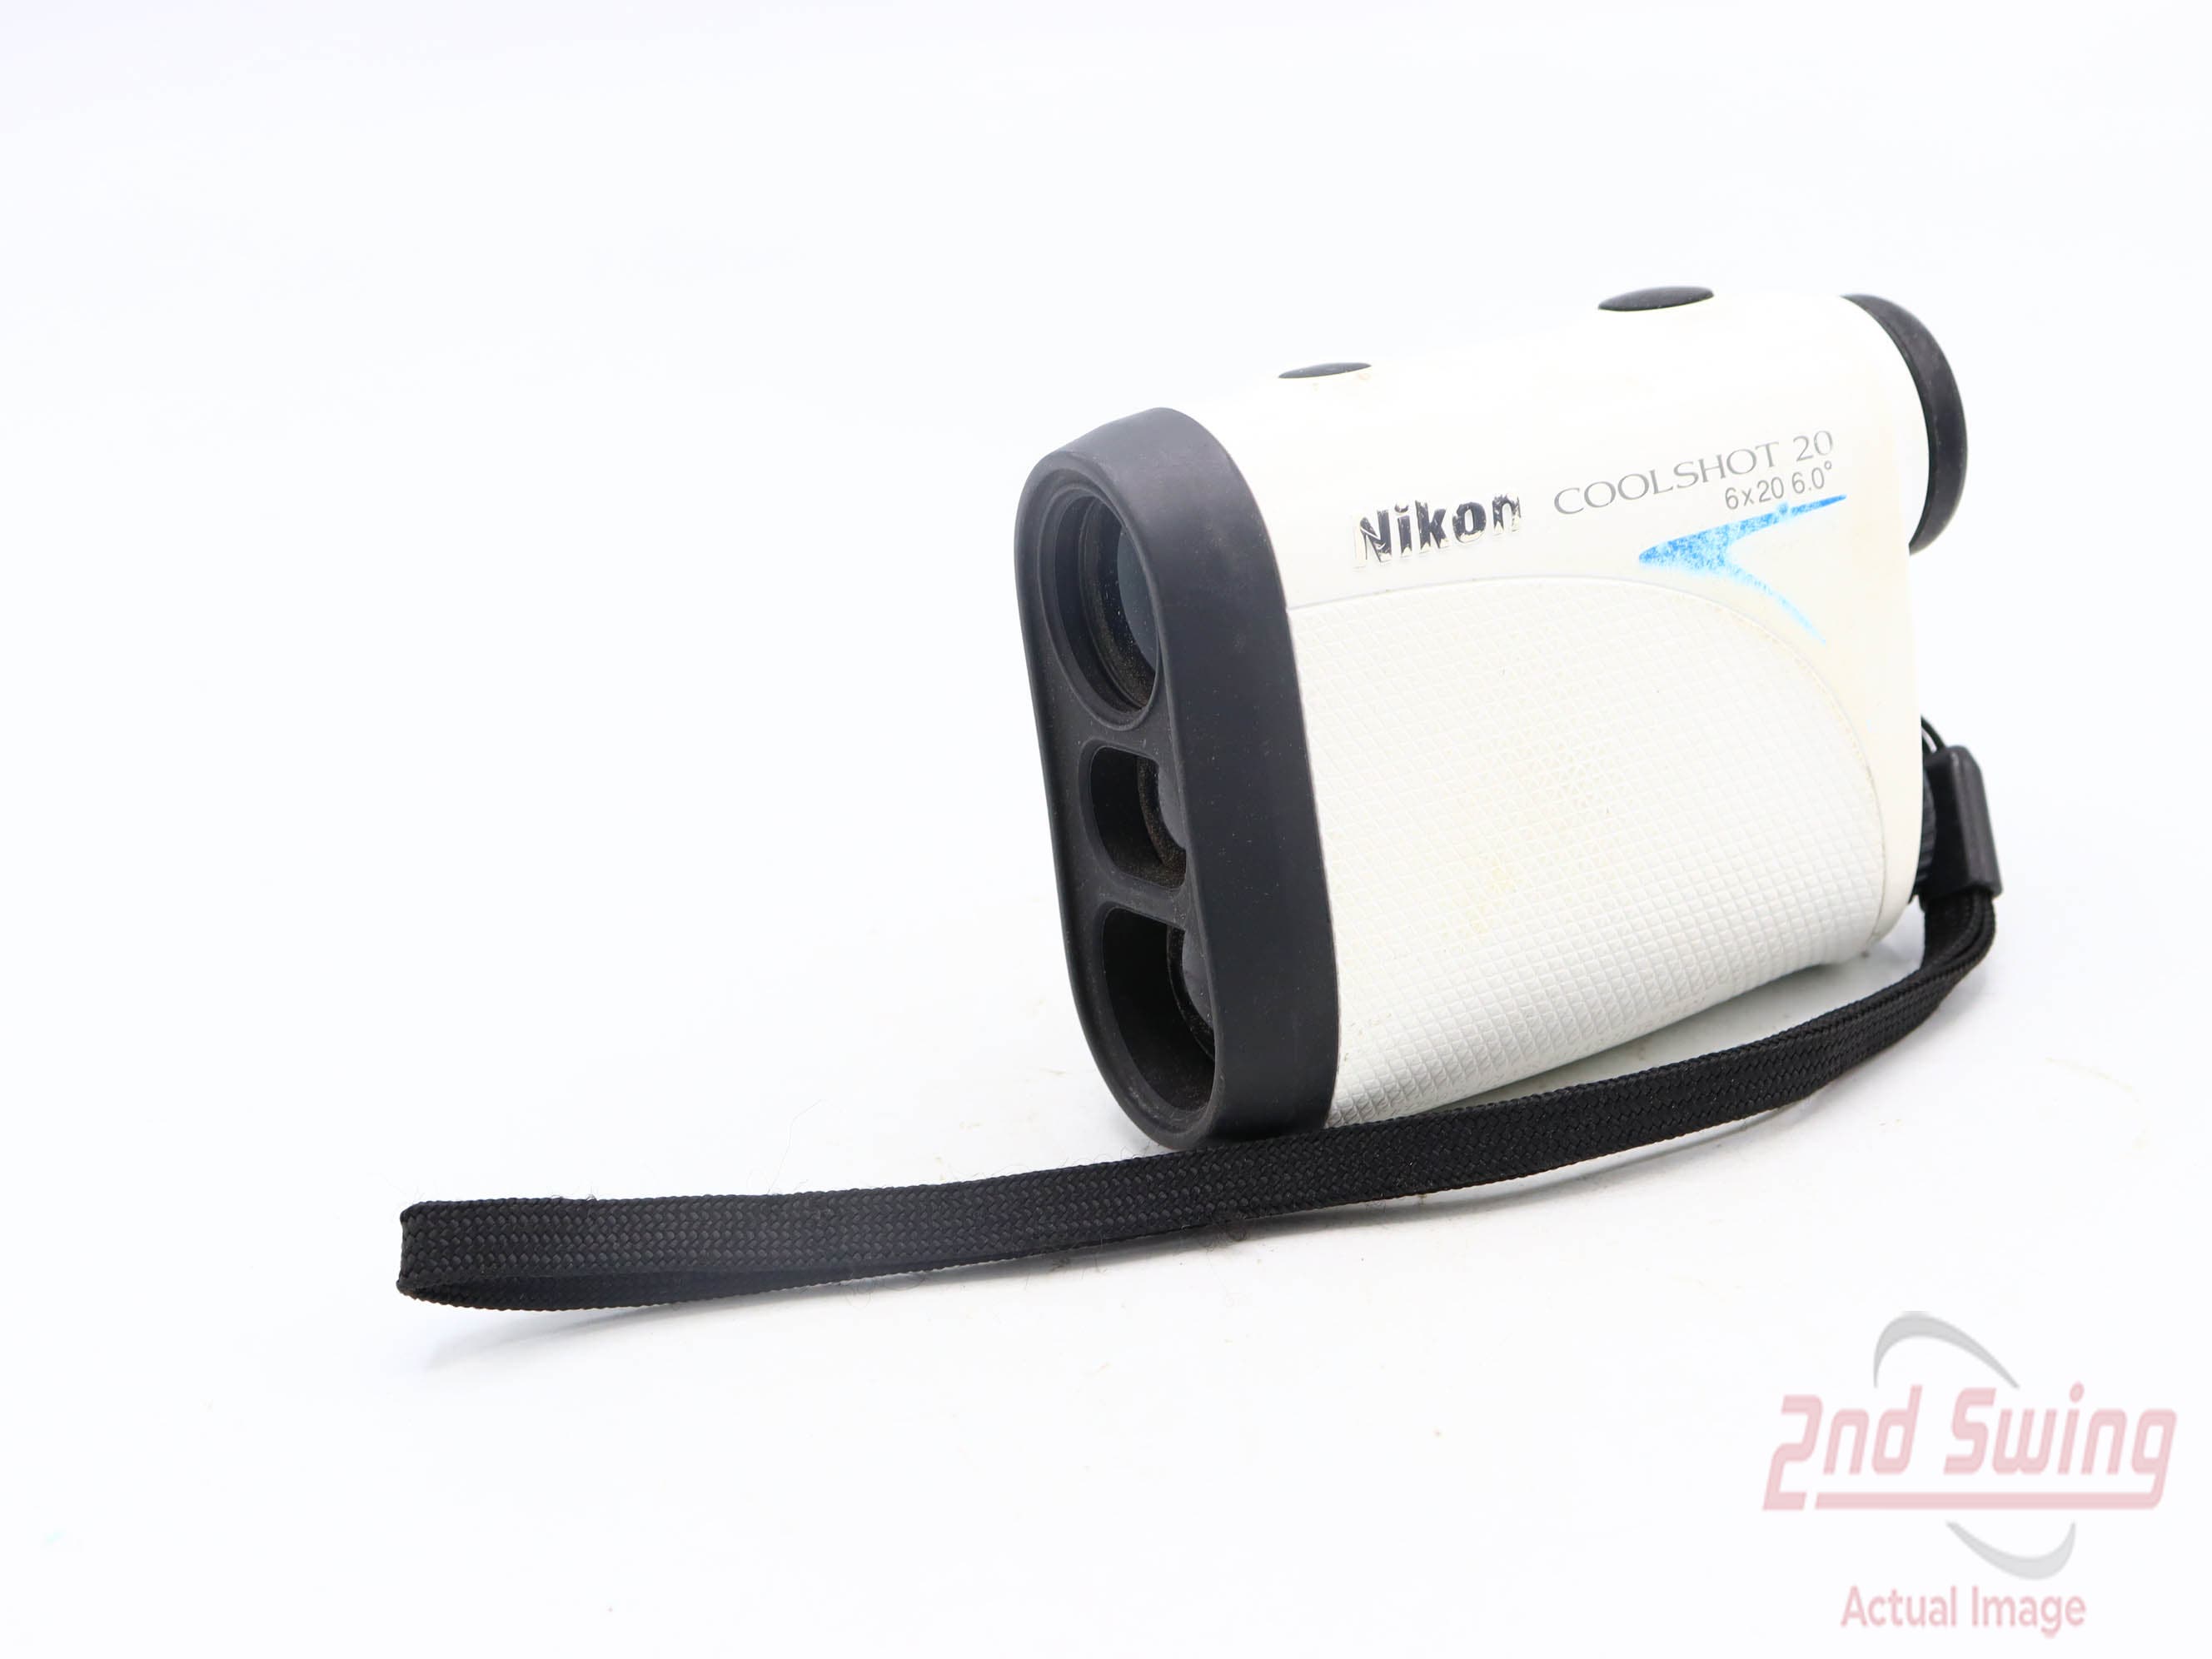 Nikon Coolshot 20 Golf GPS & Rangefinders (D-52331281846) | 2nd